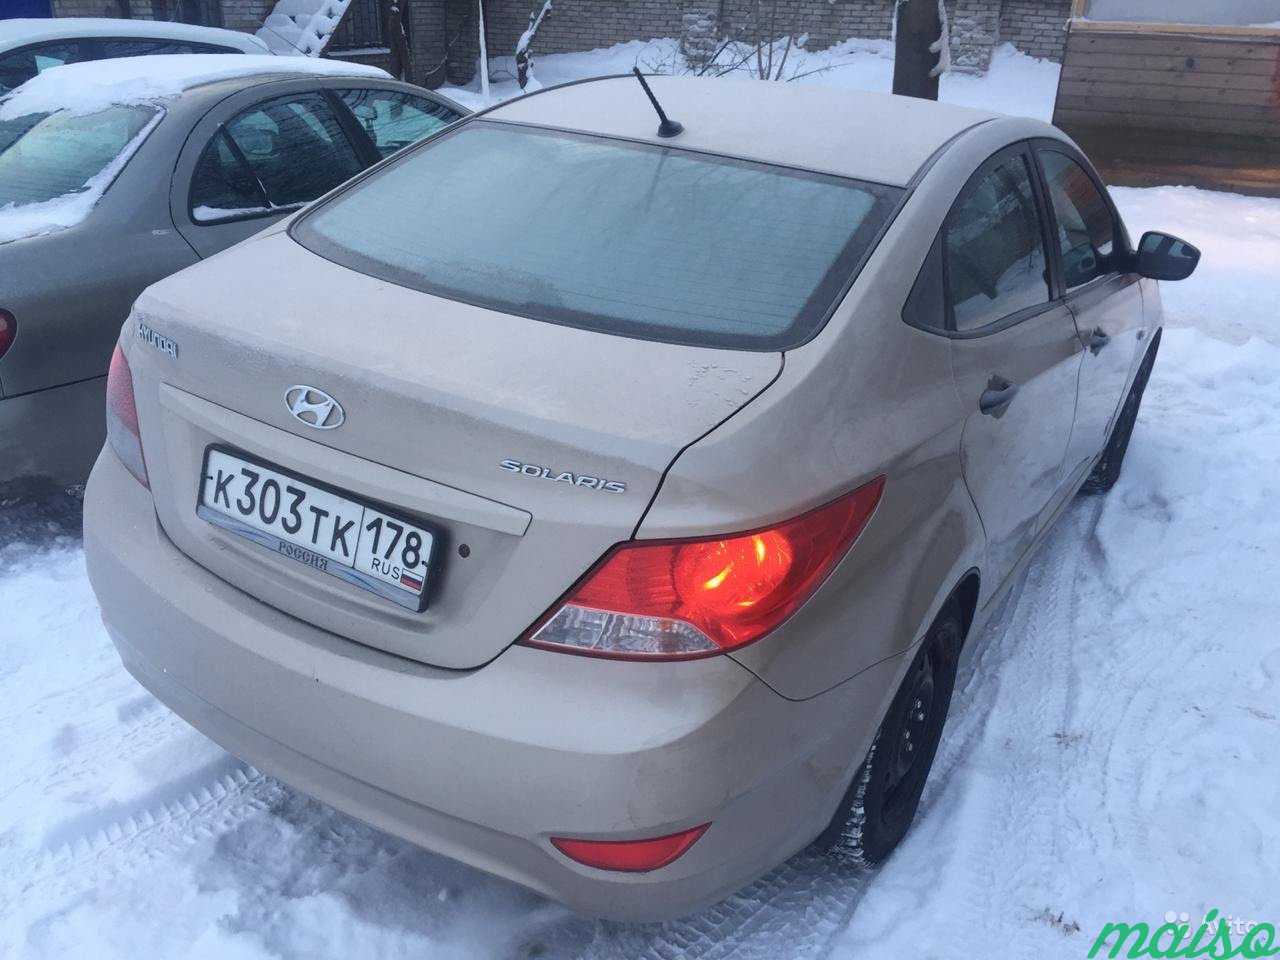 Автомобиль Hyundai Solaris АКПП в раскат в Санкт-Петербурге. Фото 4